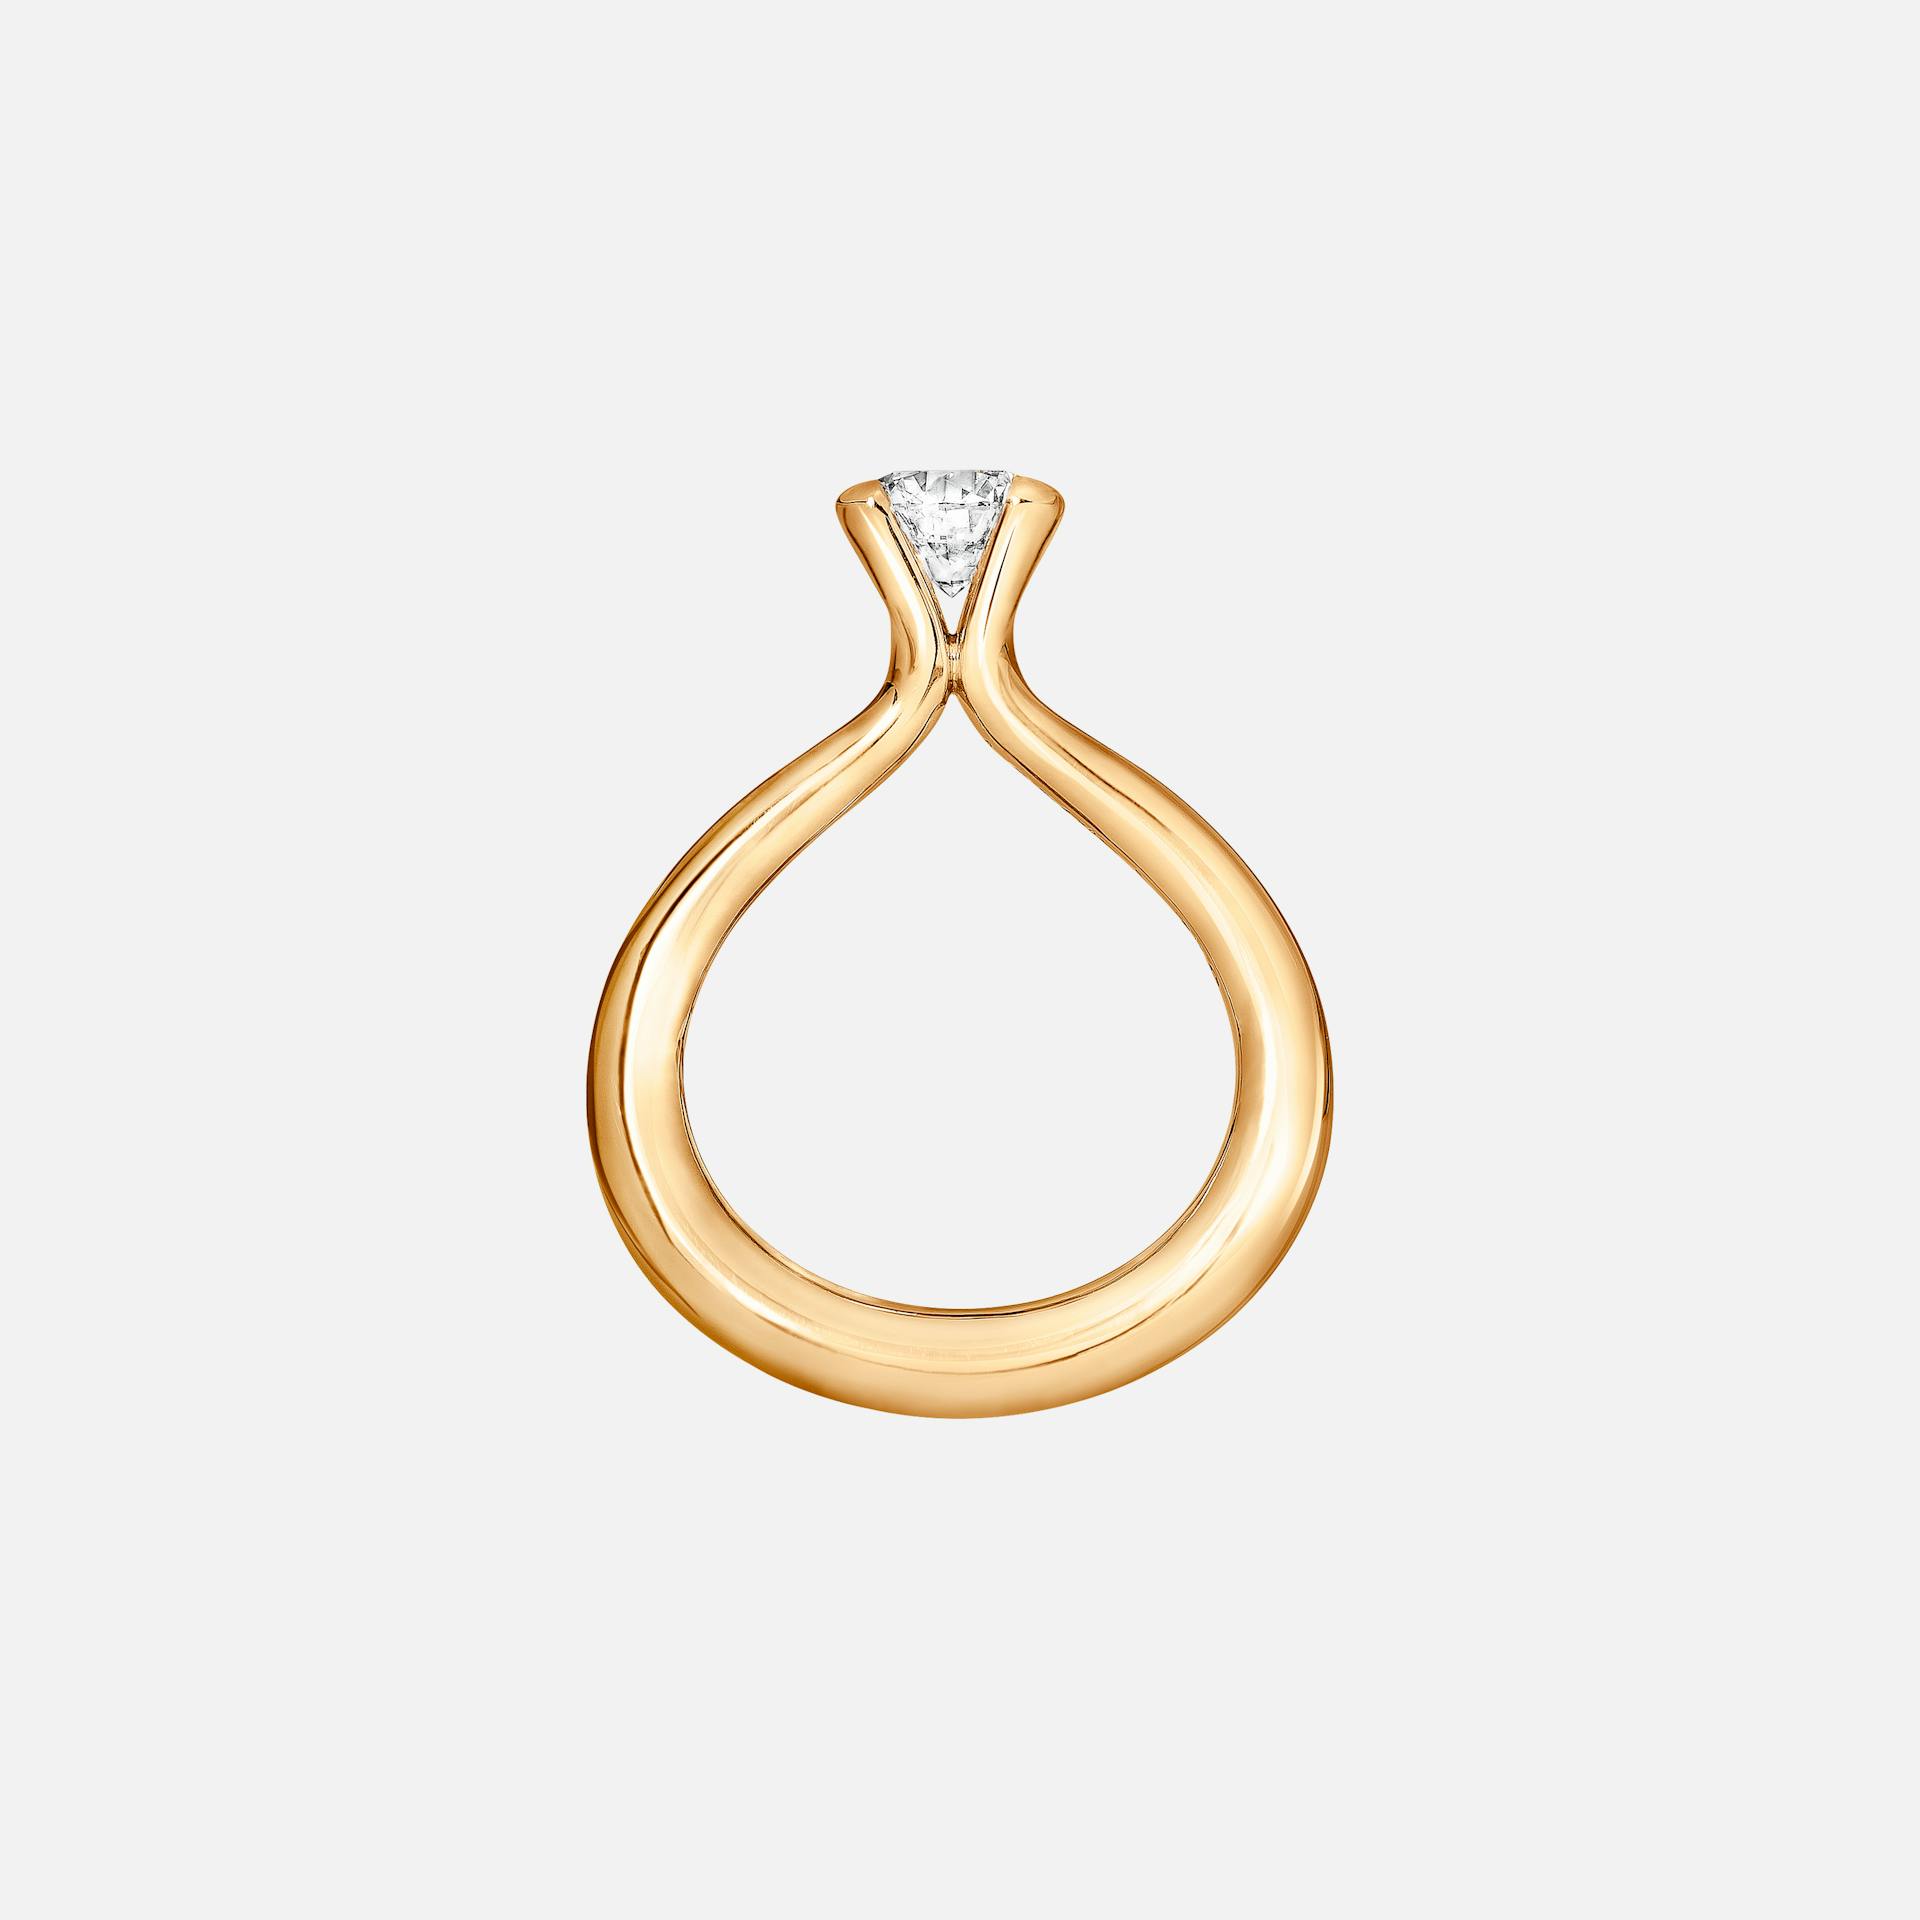 Solitaire necklace 18k guld sat med brillantslebet diamant fra 1,00 ct. TW. VS.